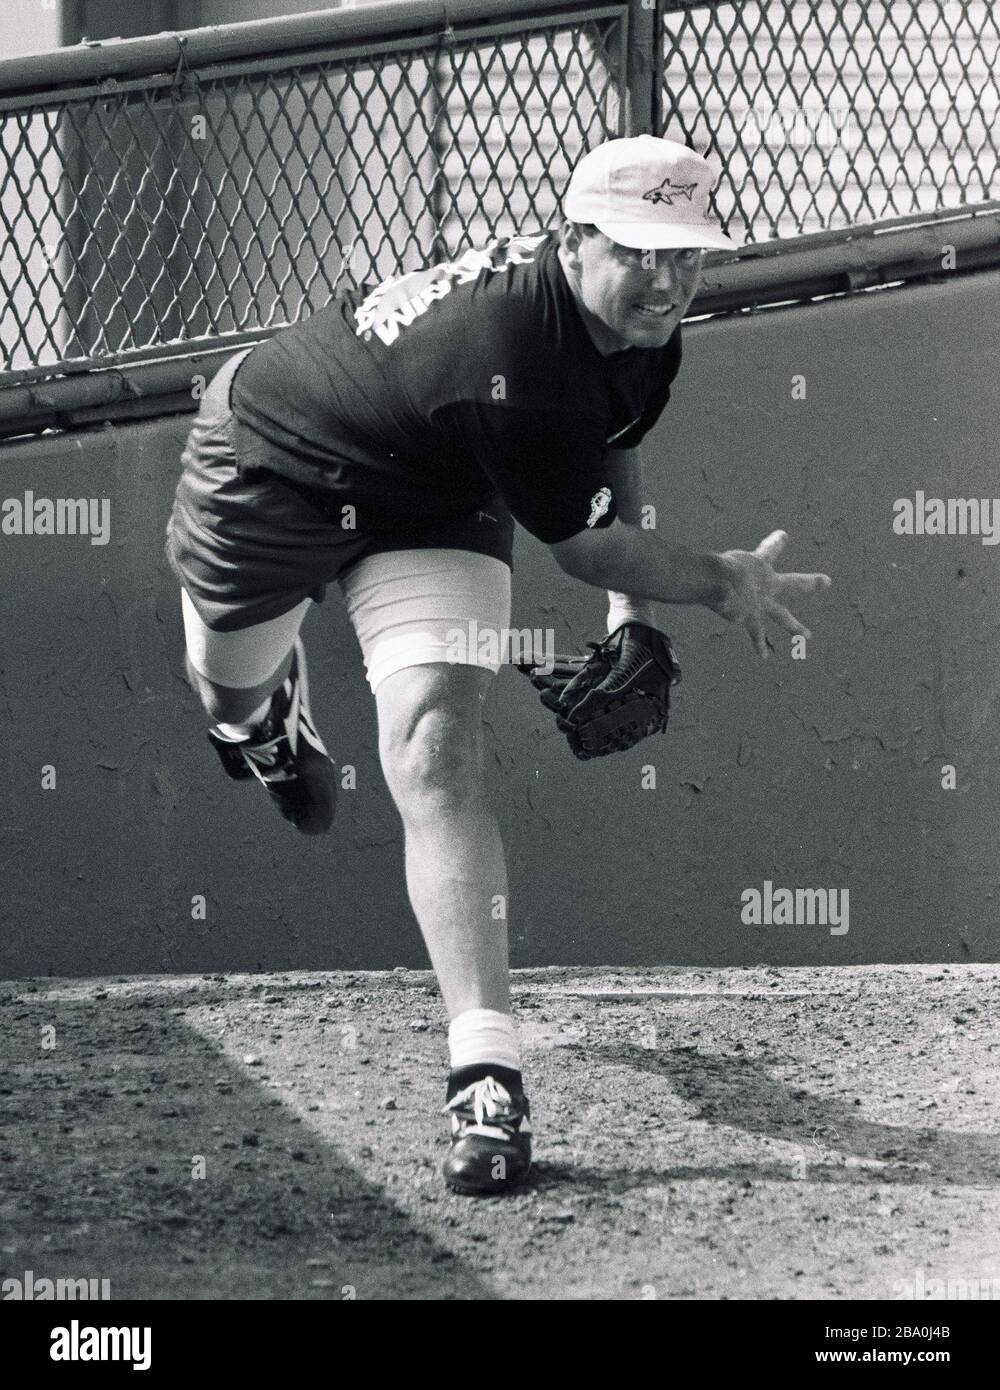 Roger Clemens, lanciatore di Red Sox, ha le sue abilità di lanciarsi nella penna Red Sox bull durante una giornata al Fenway Park di Boston ma USA, foto ecculsiva di Bill Bellknap anni '90 Foto Stock